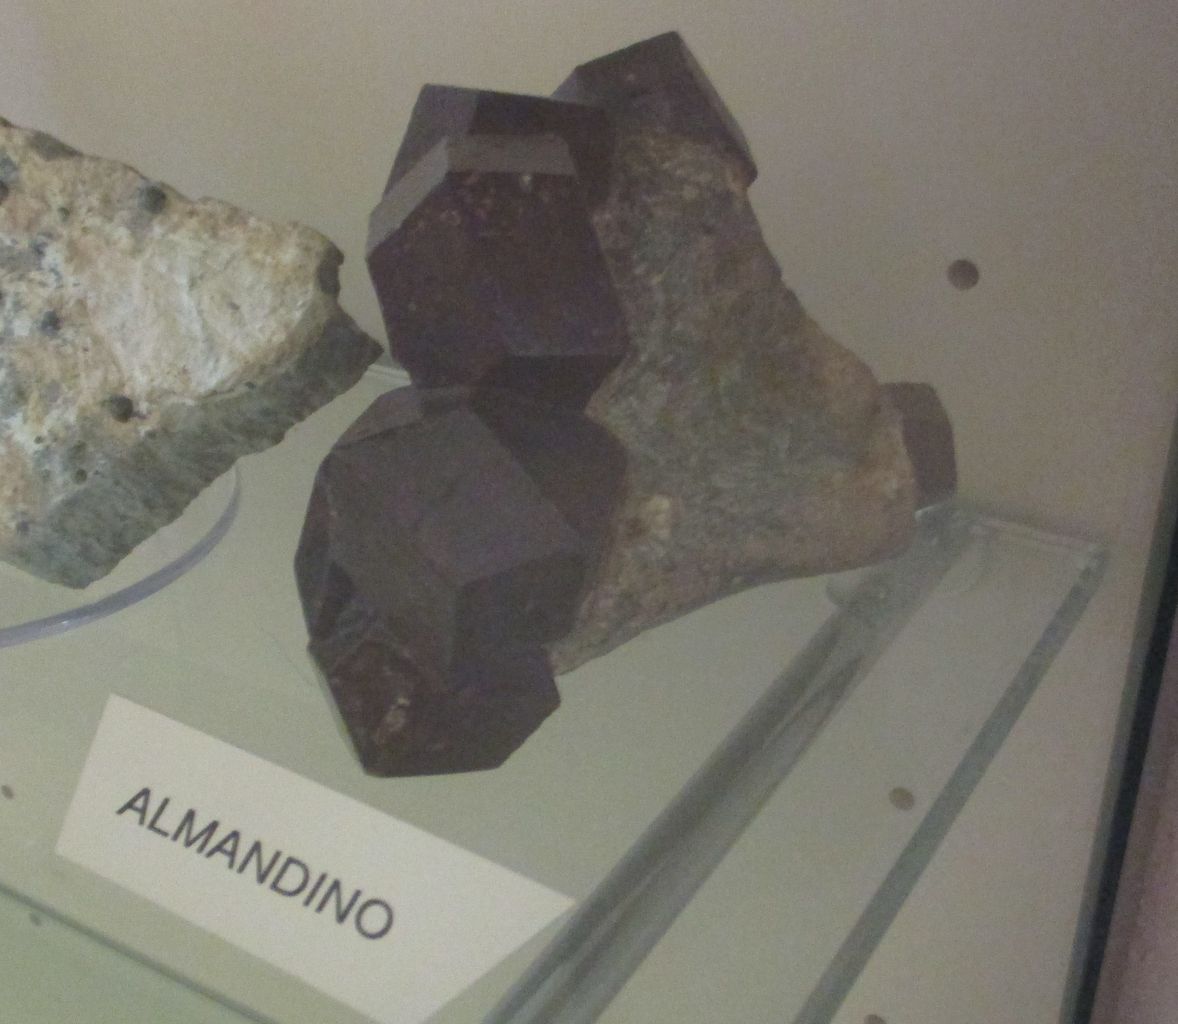 Almandino (esemplare)